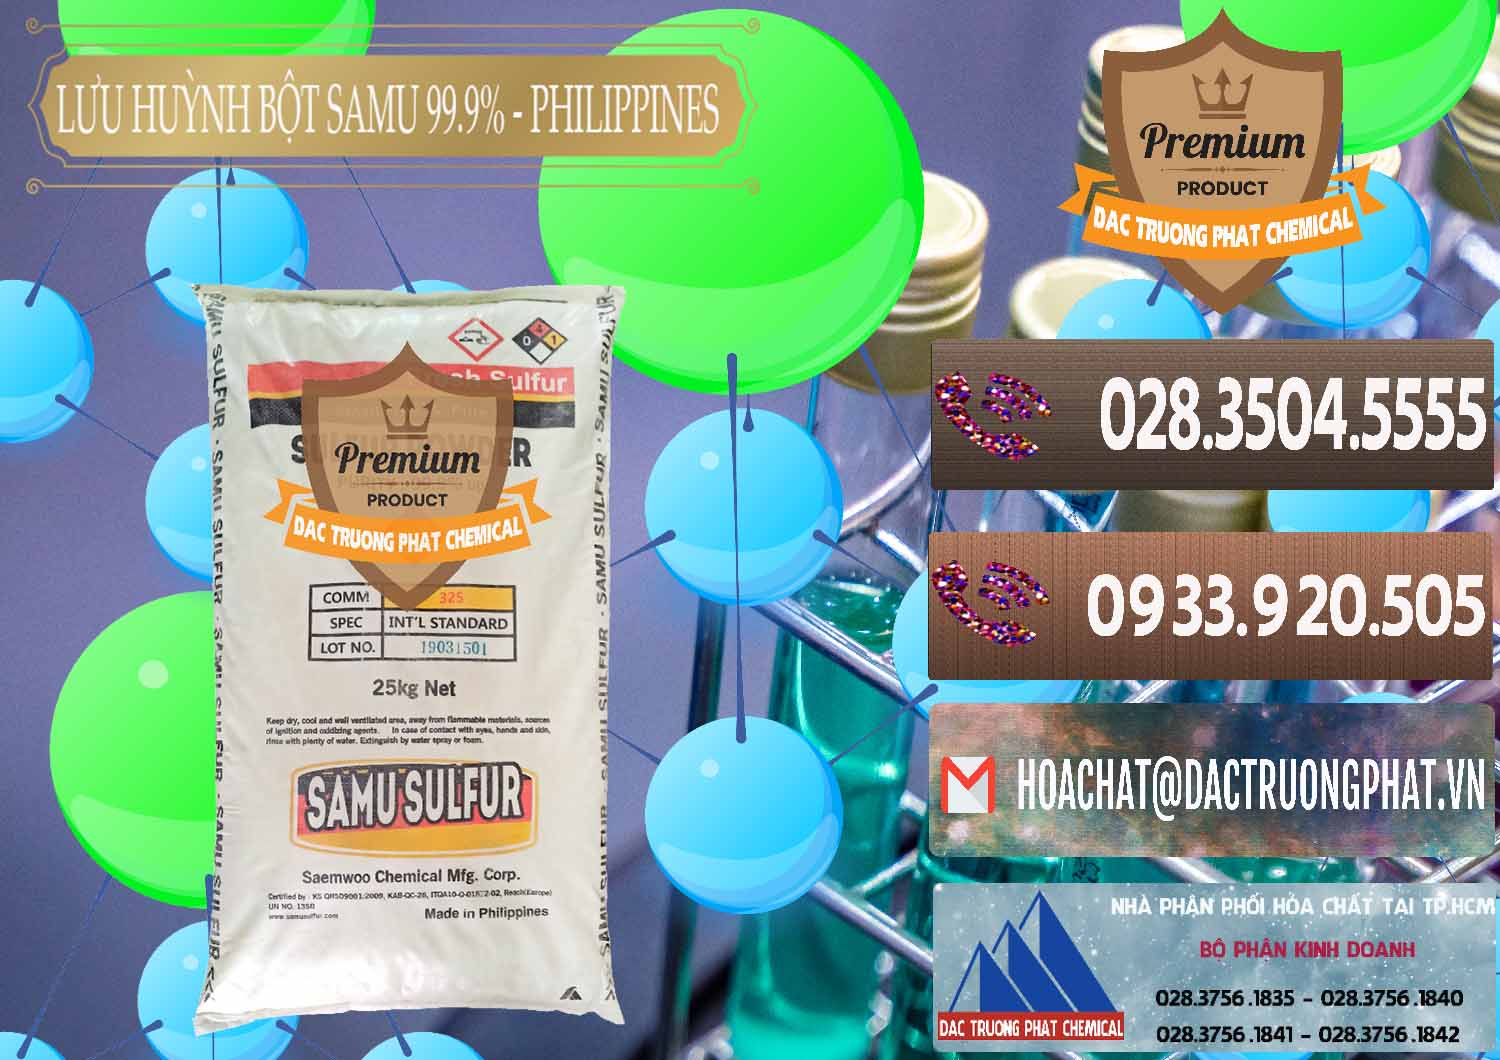 Cty chuyên bán ( cung cấp ) Lưu huỳnh Bột - Sulfur Powder Samu Philippines - 0201 - Nơi chuyên kinh doanh _ phân phối hóa chất tại TP.HCM - hoachatviet.net